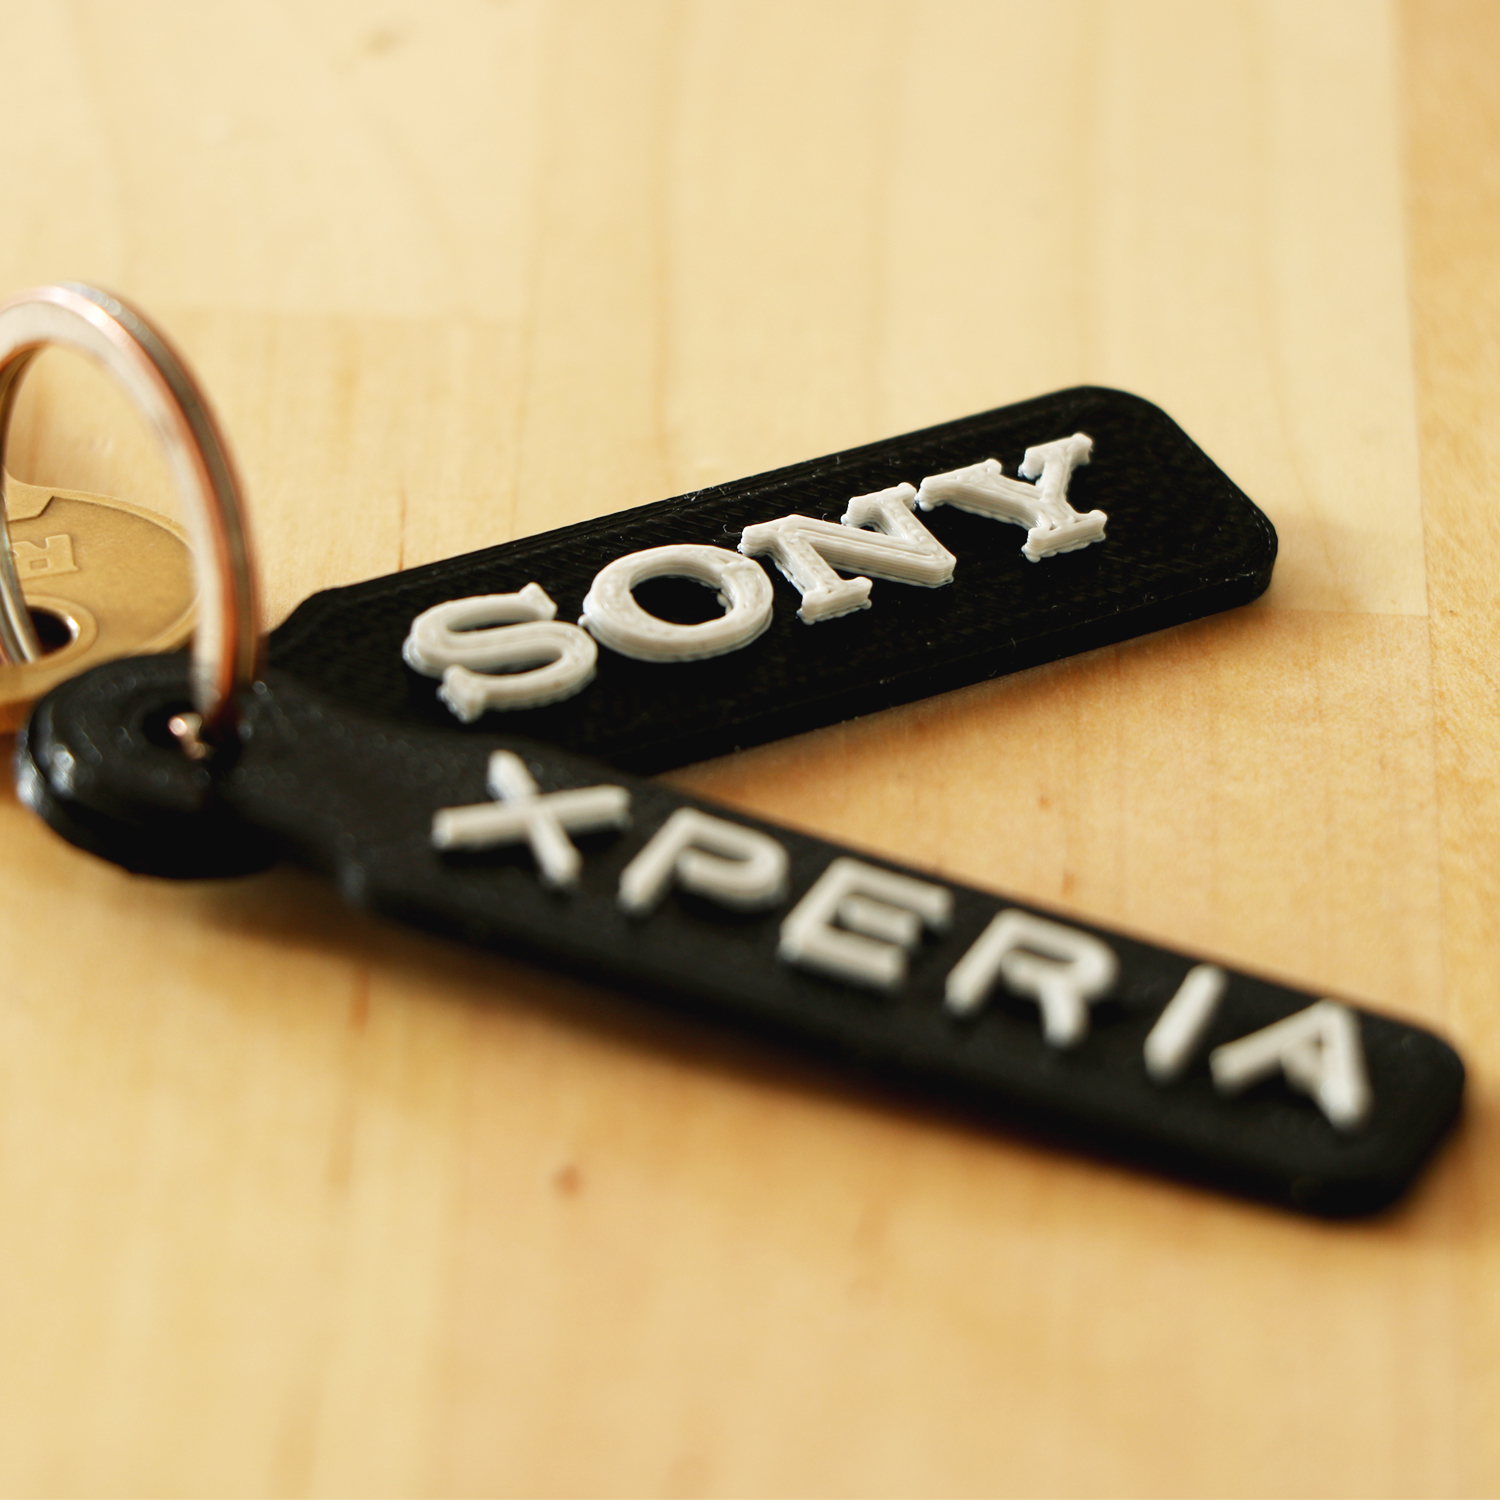 Sony Xperia Keychain